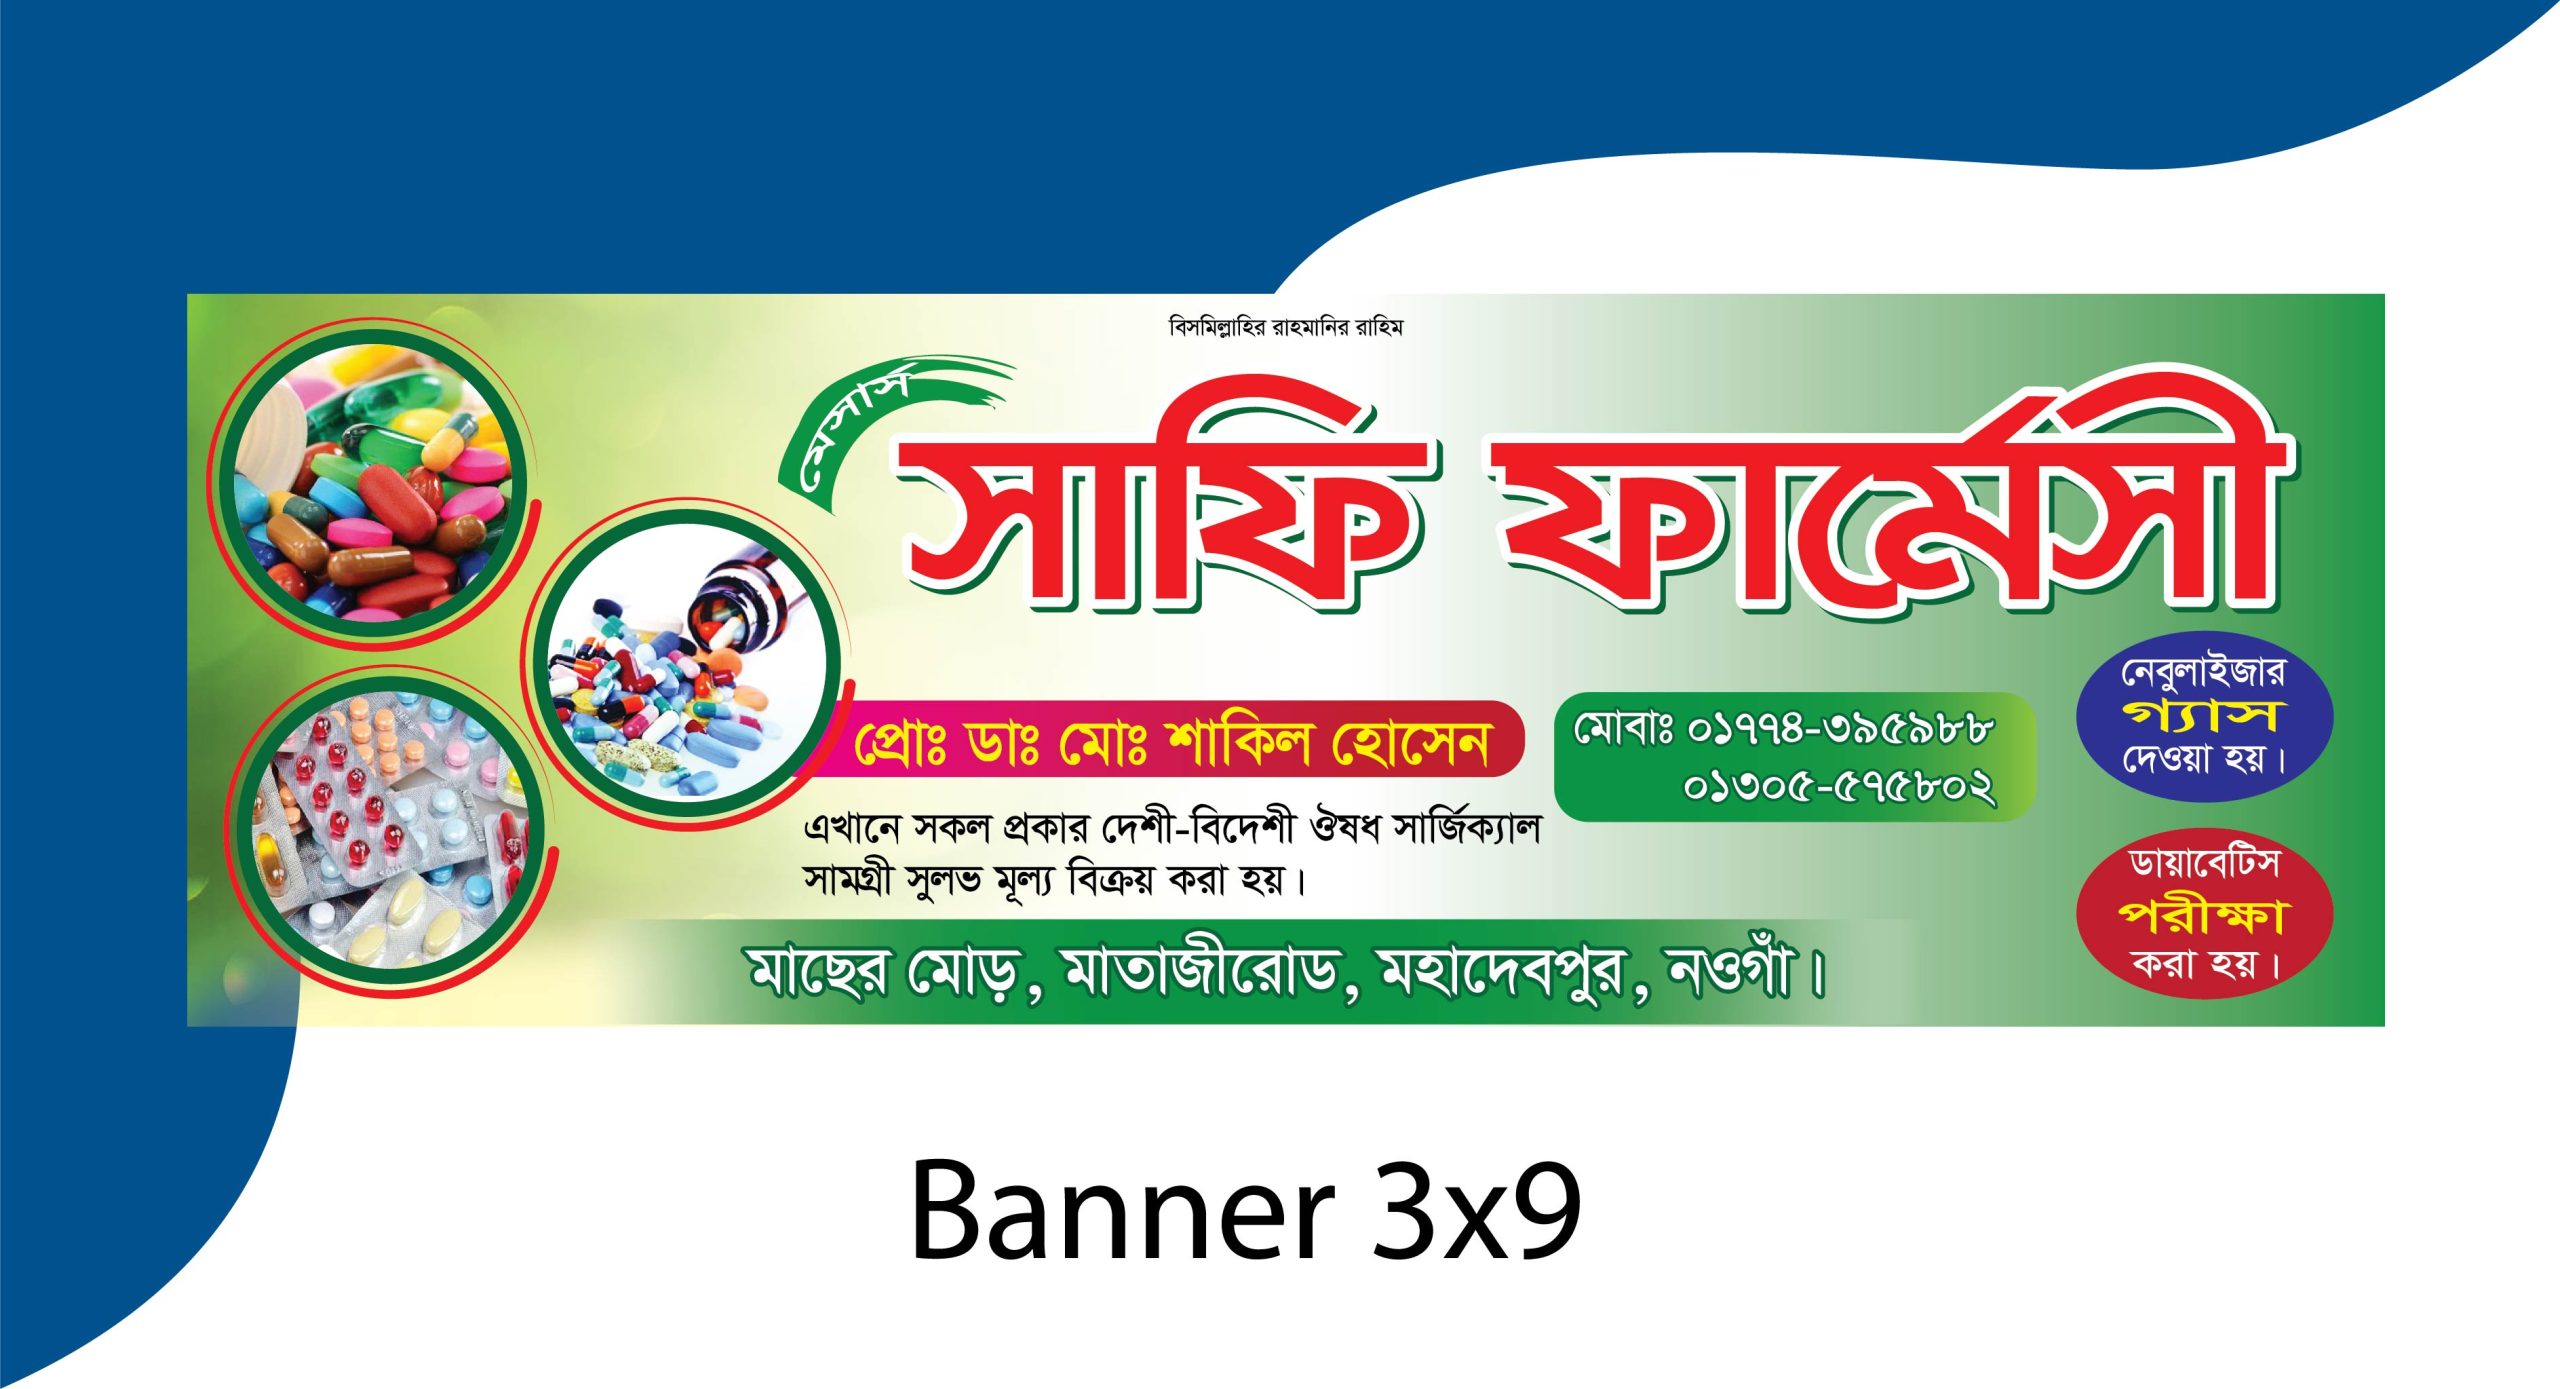 pharmacy banner design